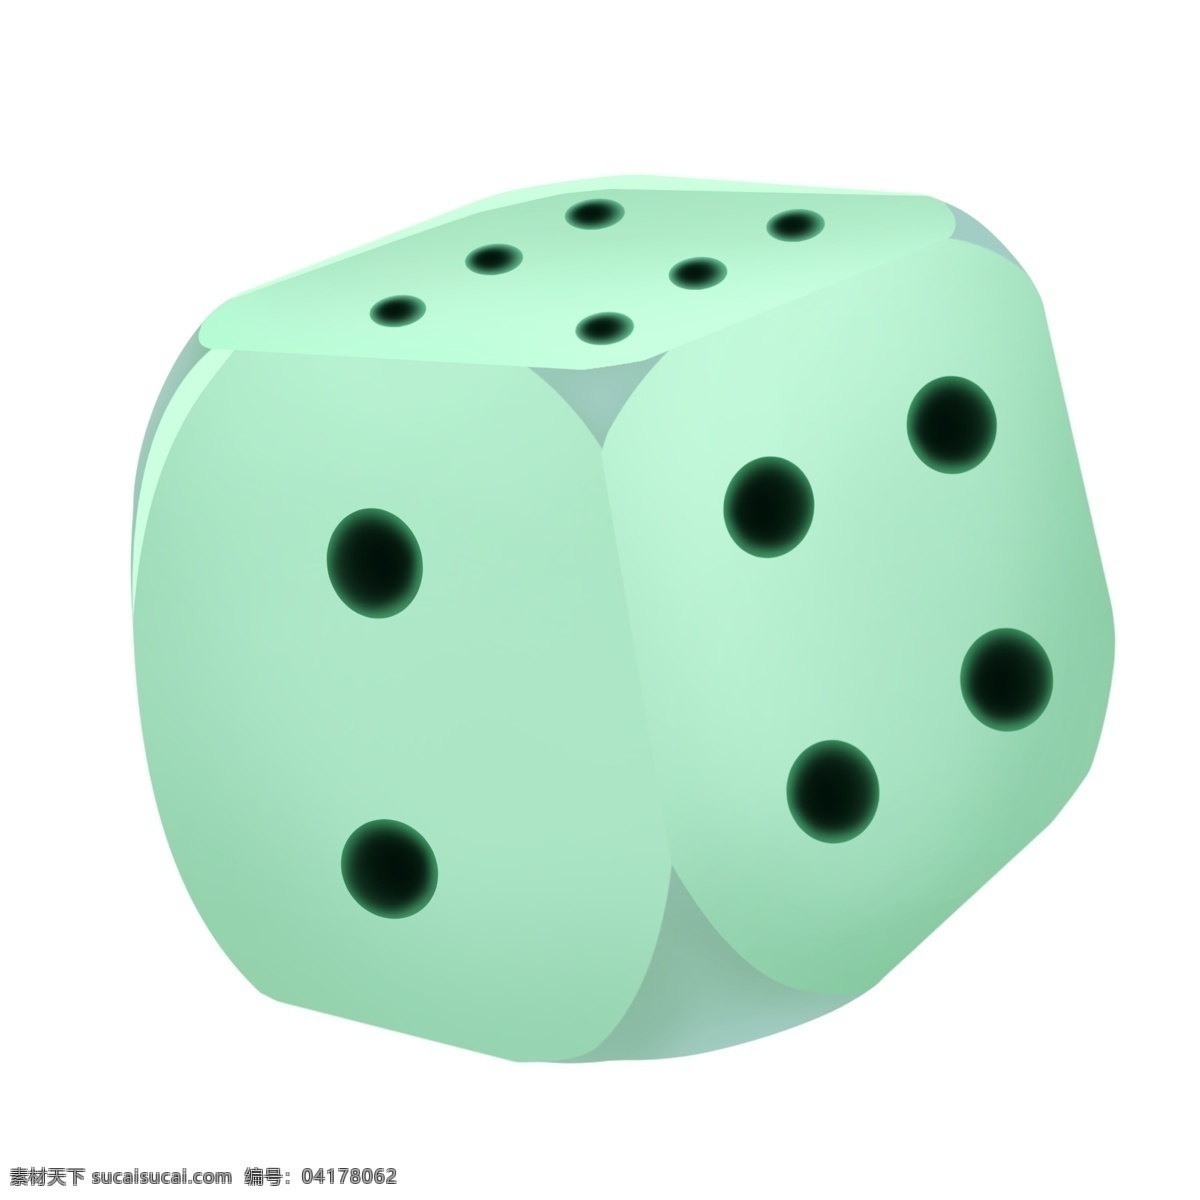 浅绿色 骰子 插画 浅绿色的骰子 正方体的骰子 创意色子道具 二 六 点 色子 麻将游戏道具 黑色的圆点